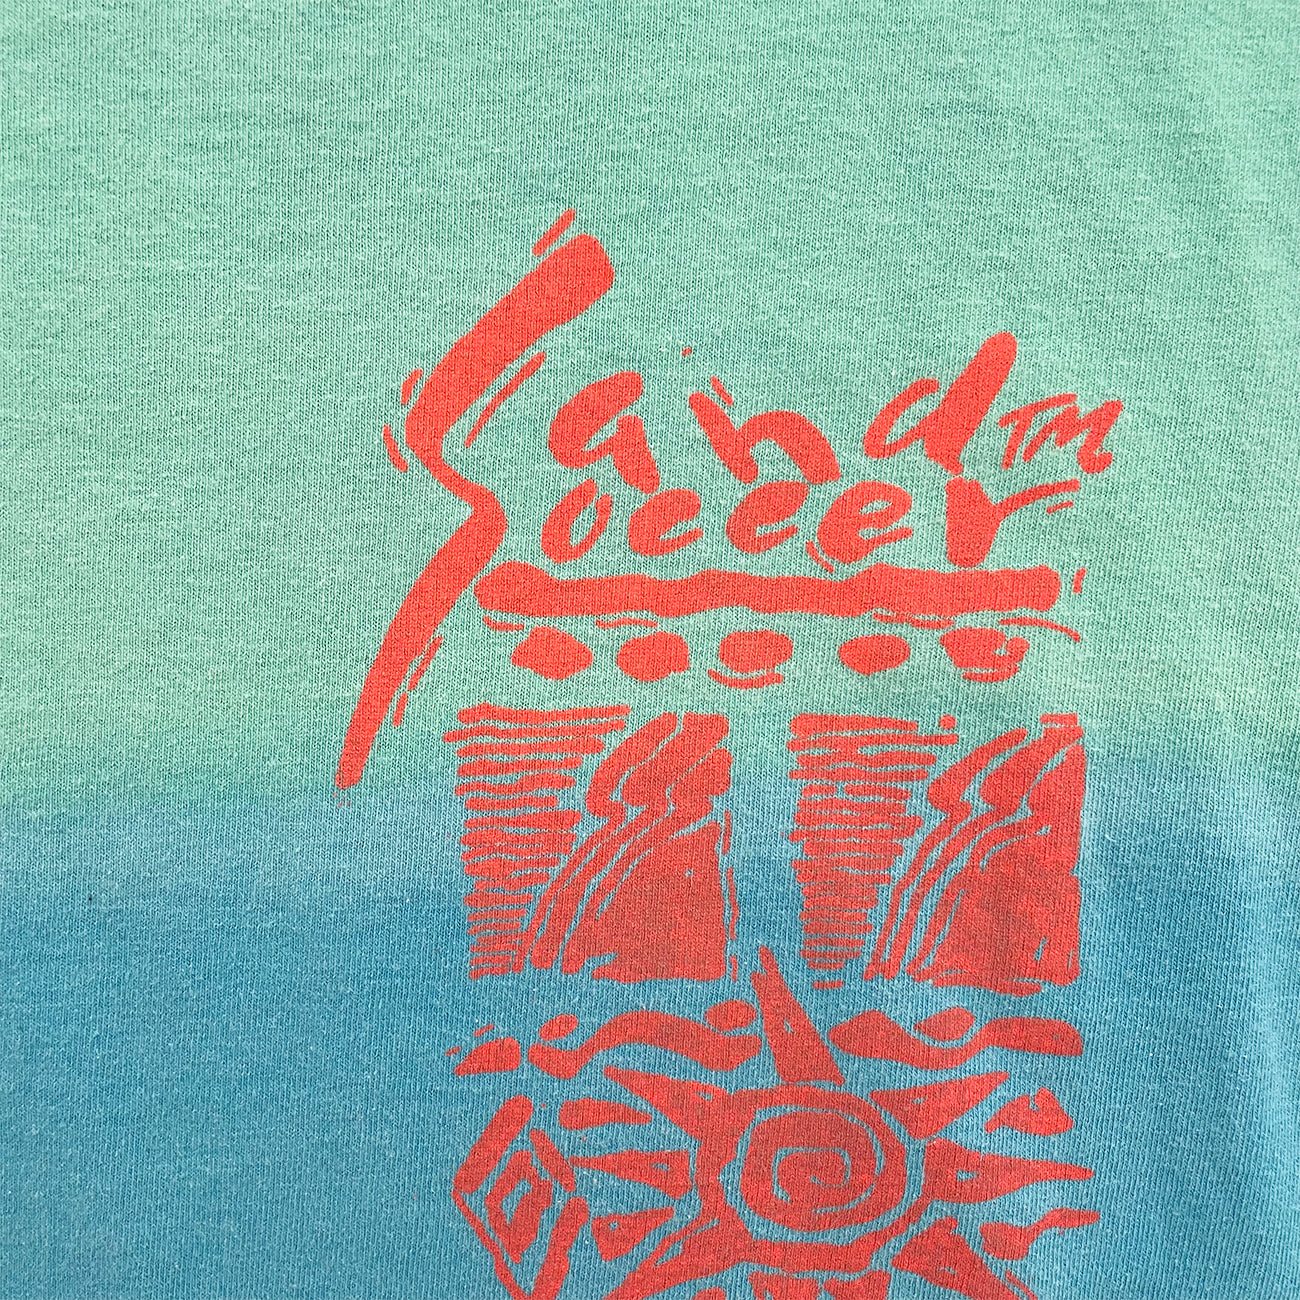 Umbro Sand Soccer Dye T-Shirt - L